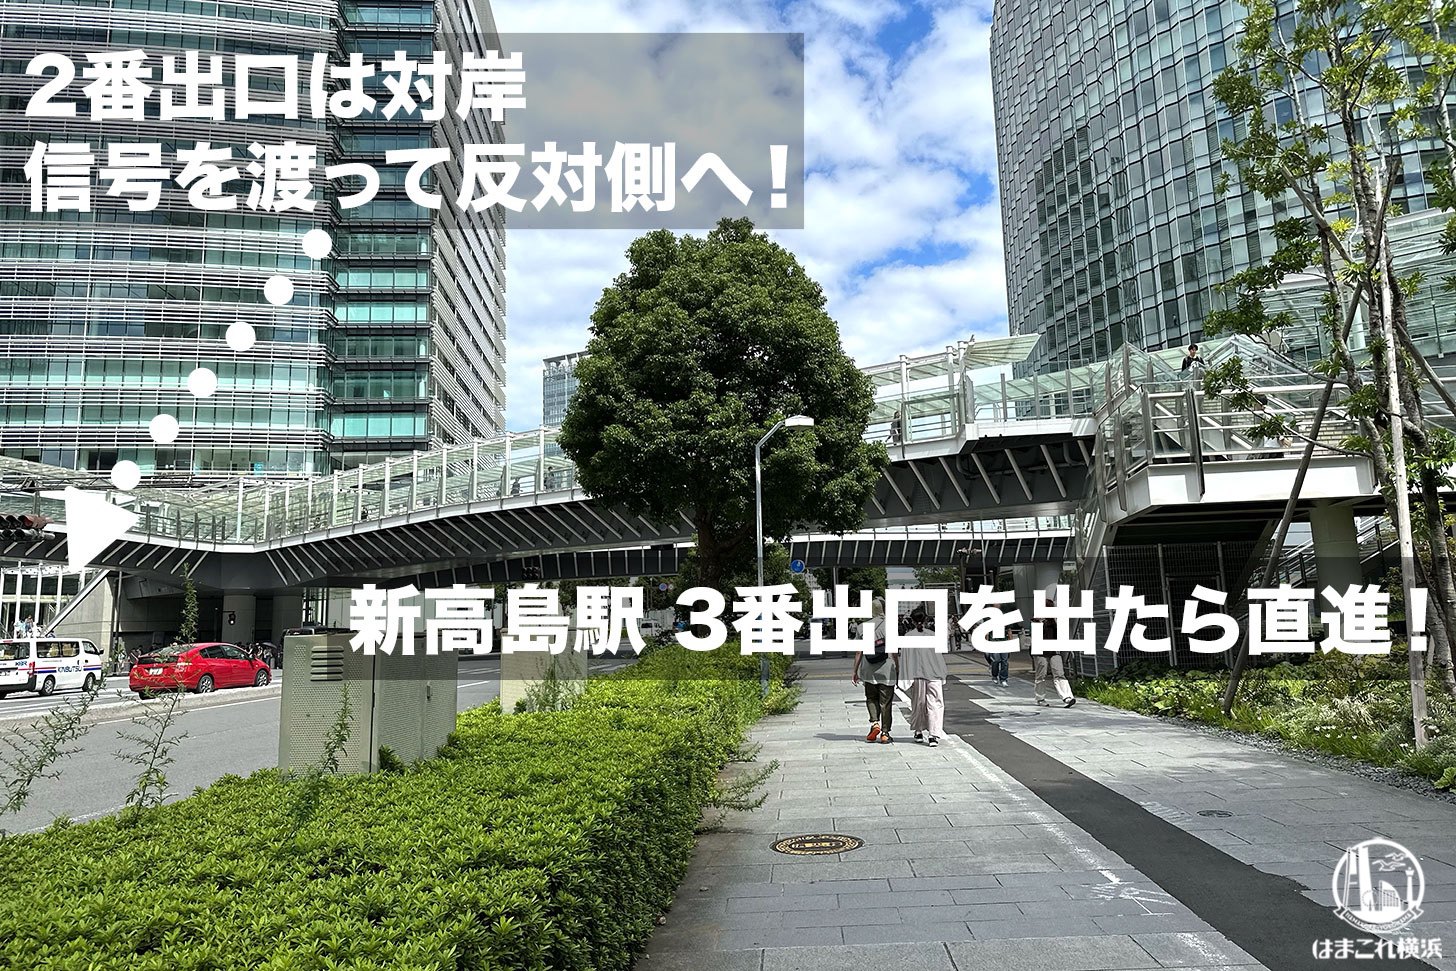 新高島駅出口 2番出口と3番出口